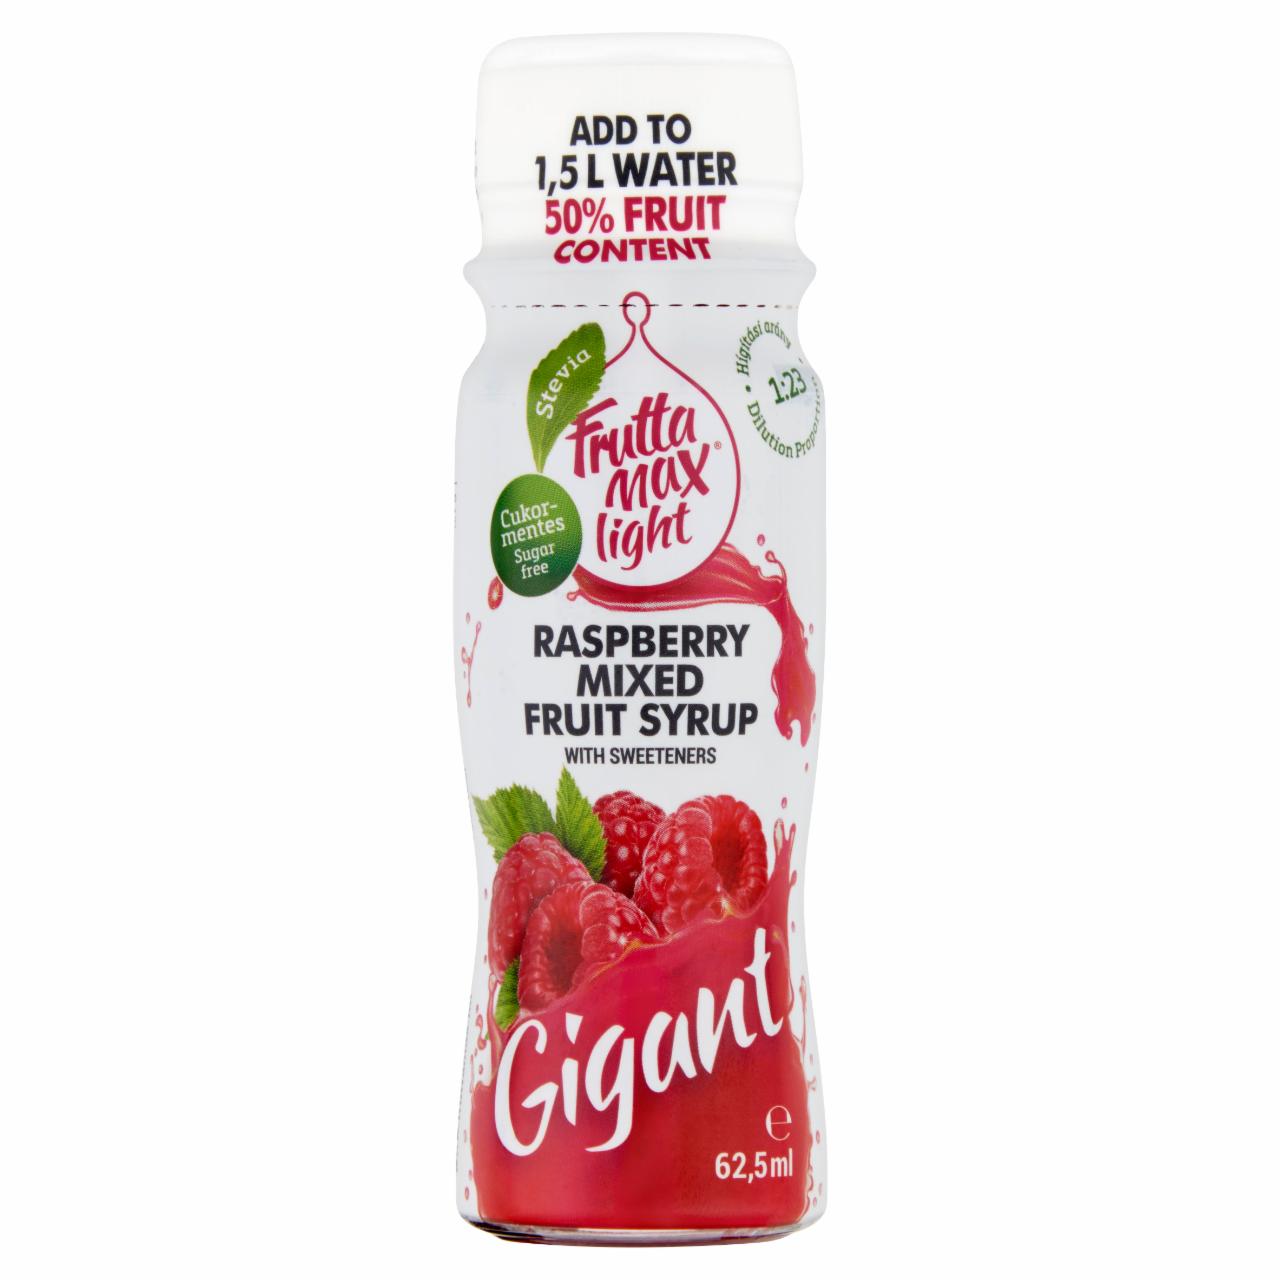 Képek - FruttaMax Gigant cukormentes málna vegyes gyümölcsszörp édesítőszerrel 62,5 ml